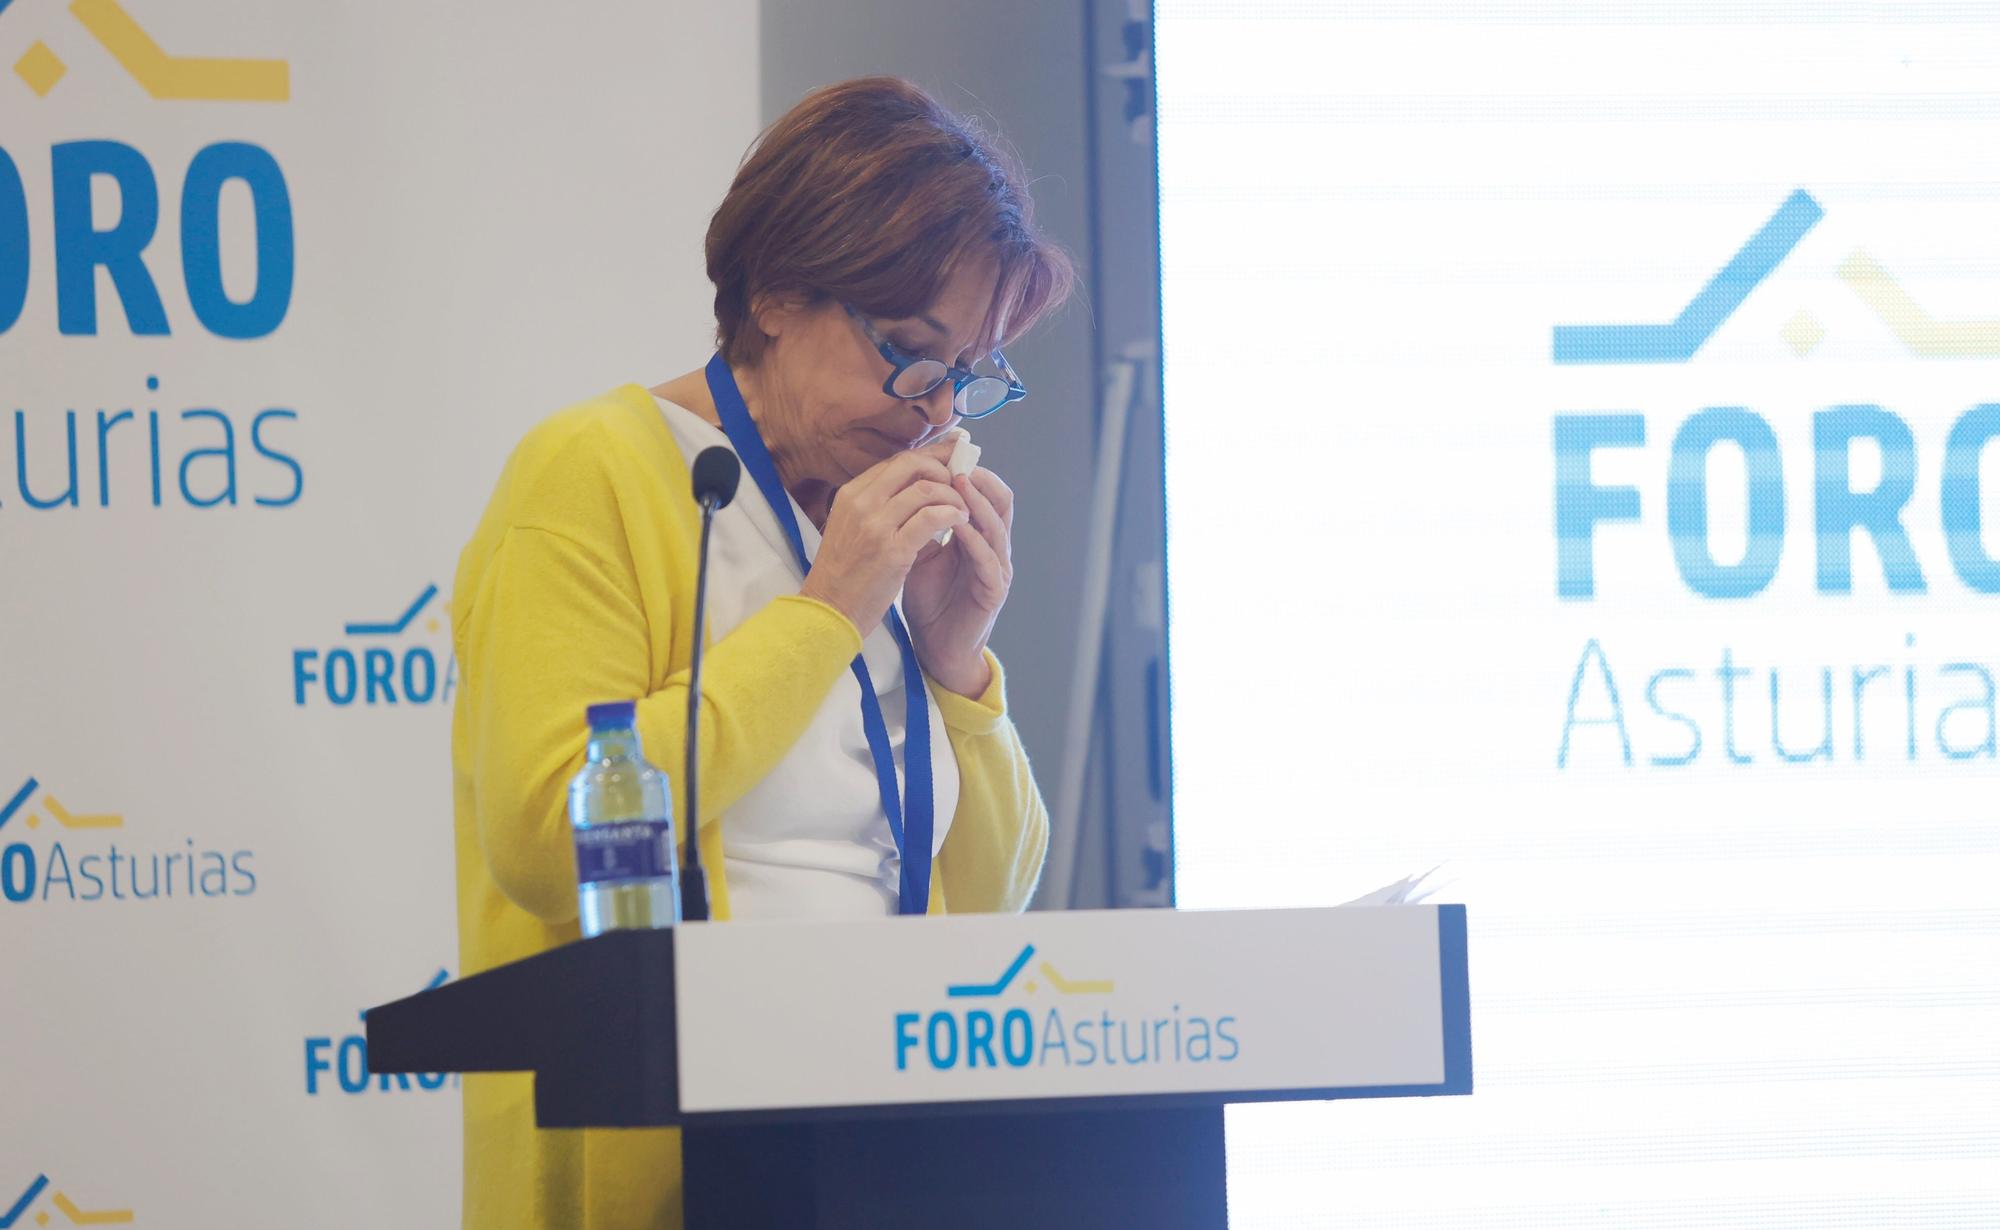 EN IMÁGENES: Así fue el congreso de Foro Asturias en el que ha salido reelegidos Adrián Pumares como candidato y Carmen Moriyón como presidenta del partido